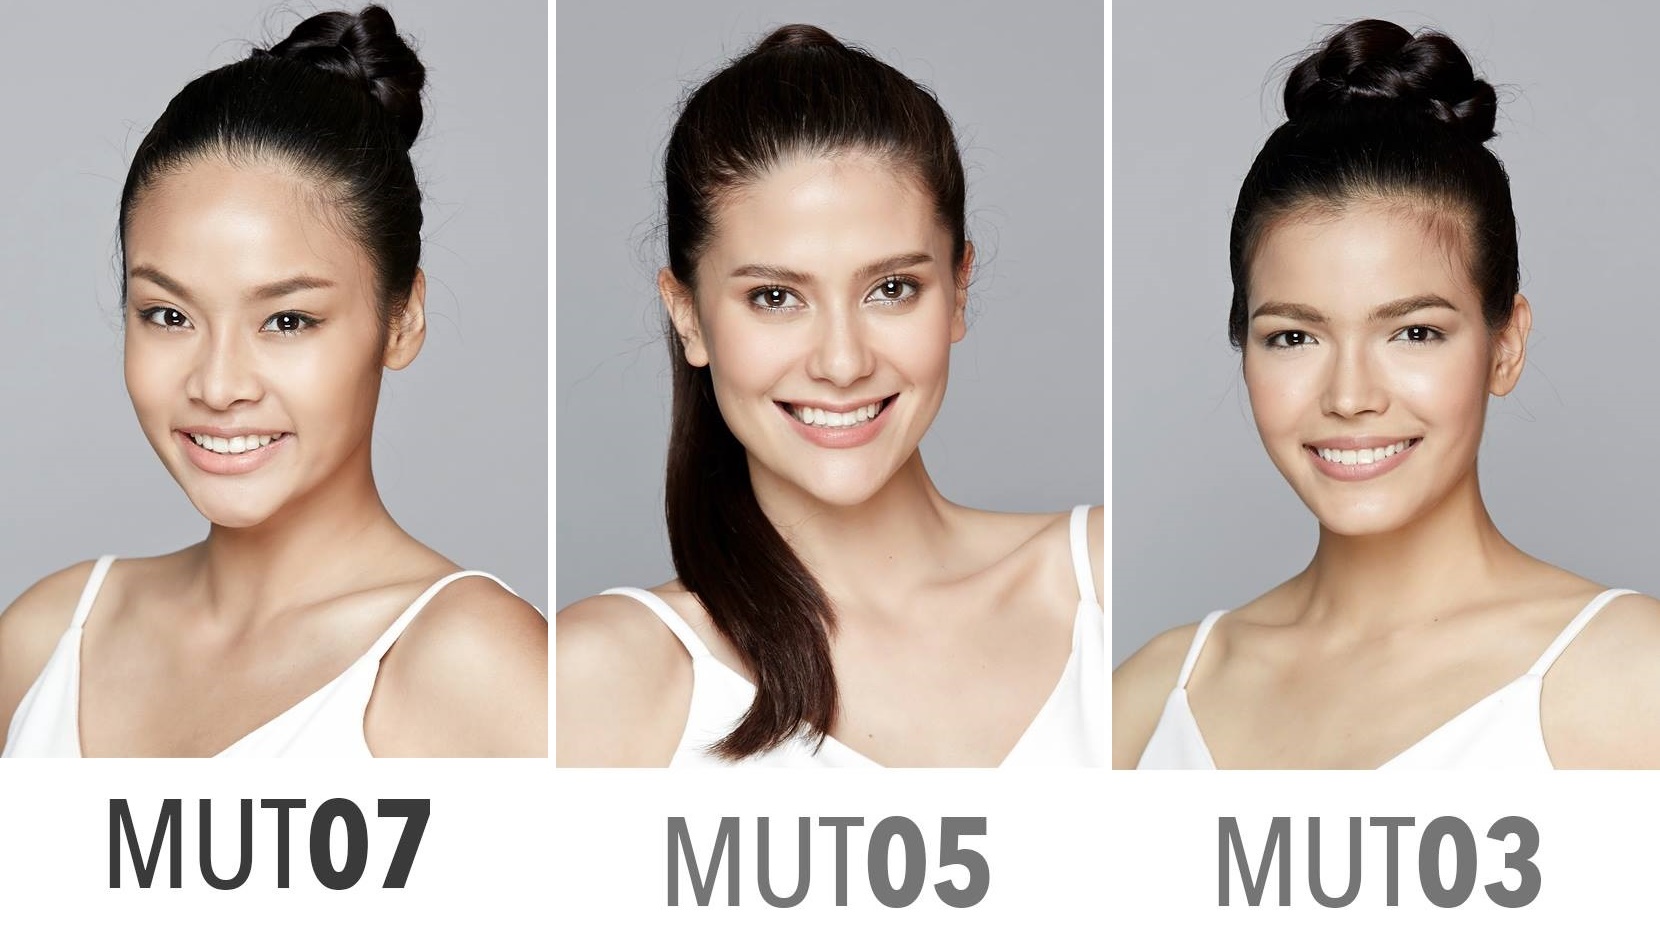 รู้จักกับ 40 ผู้เข้ารอบ “Miss Universe Thailand 2017” ทั้งสวยและปัง ครบครันทุกความสามารถ!!